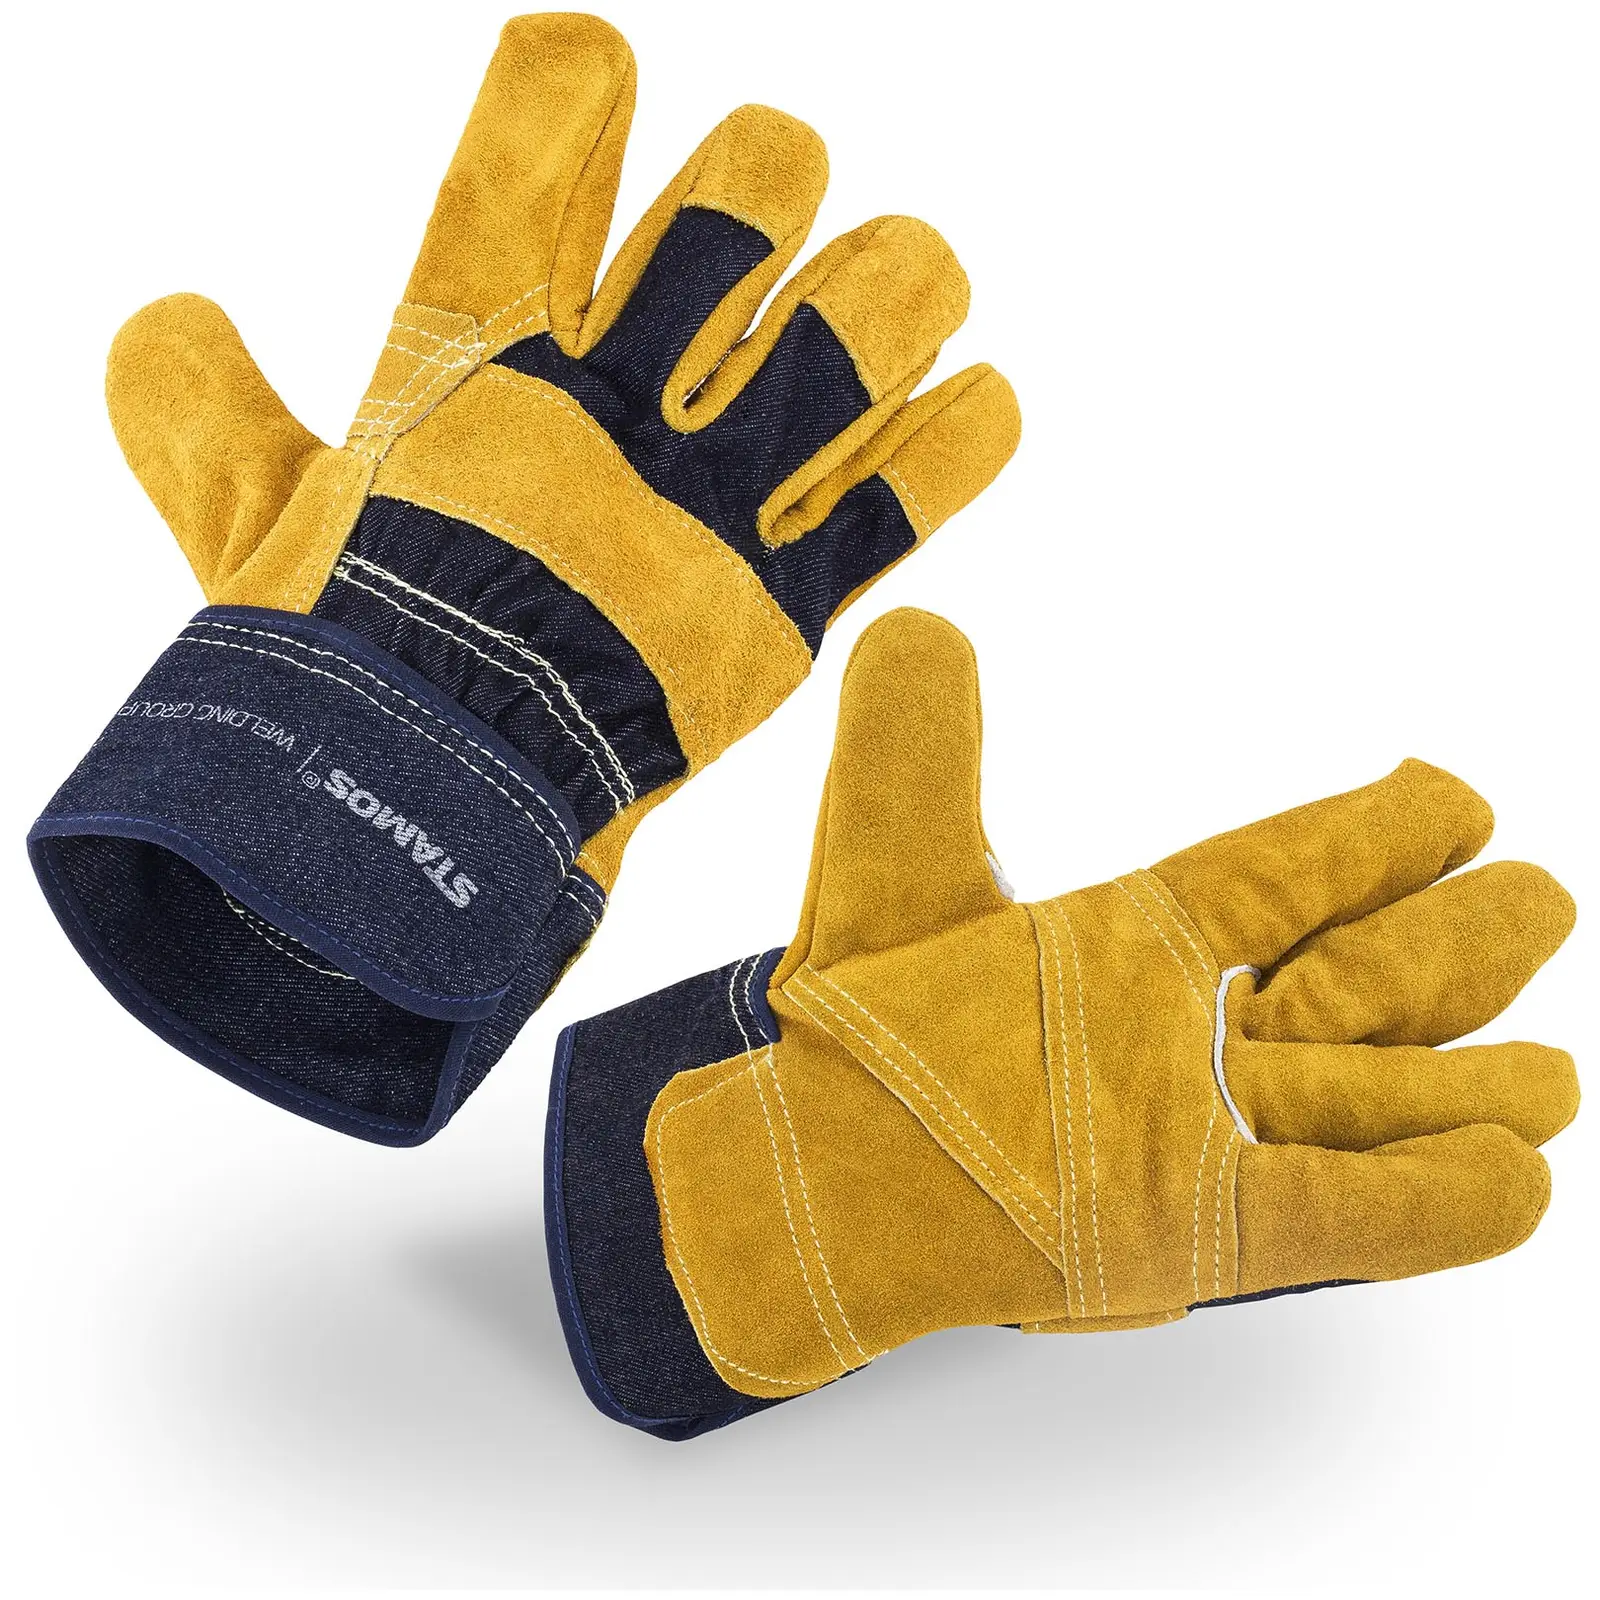 Pracovní rukavice - velikost 10/XL